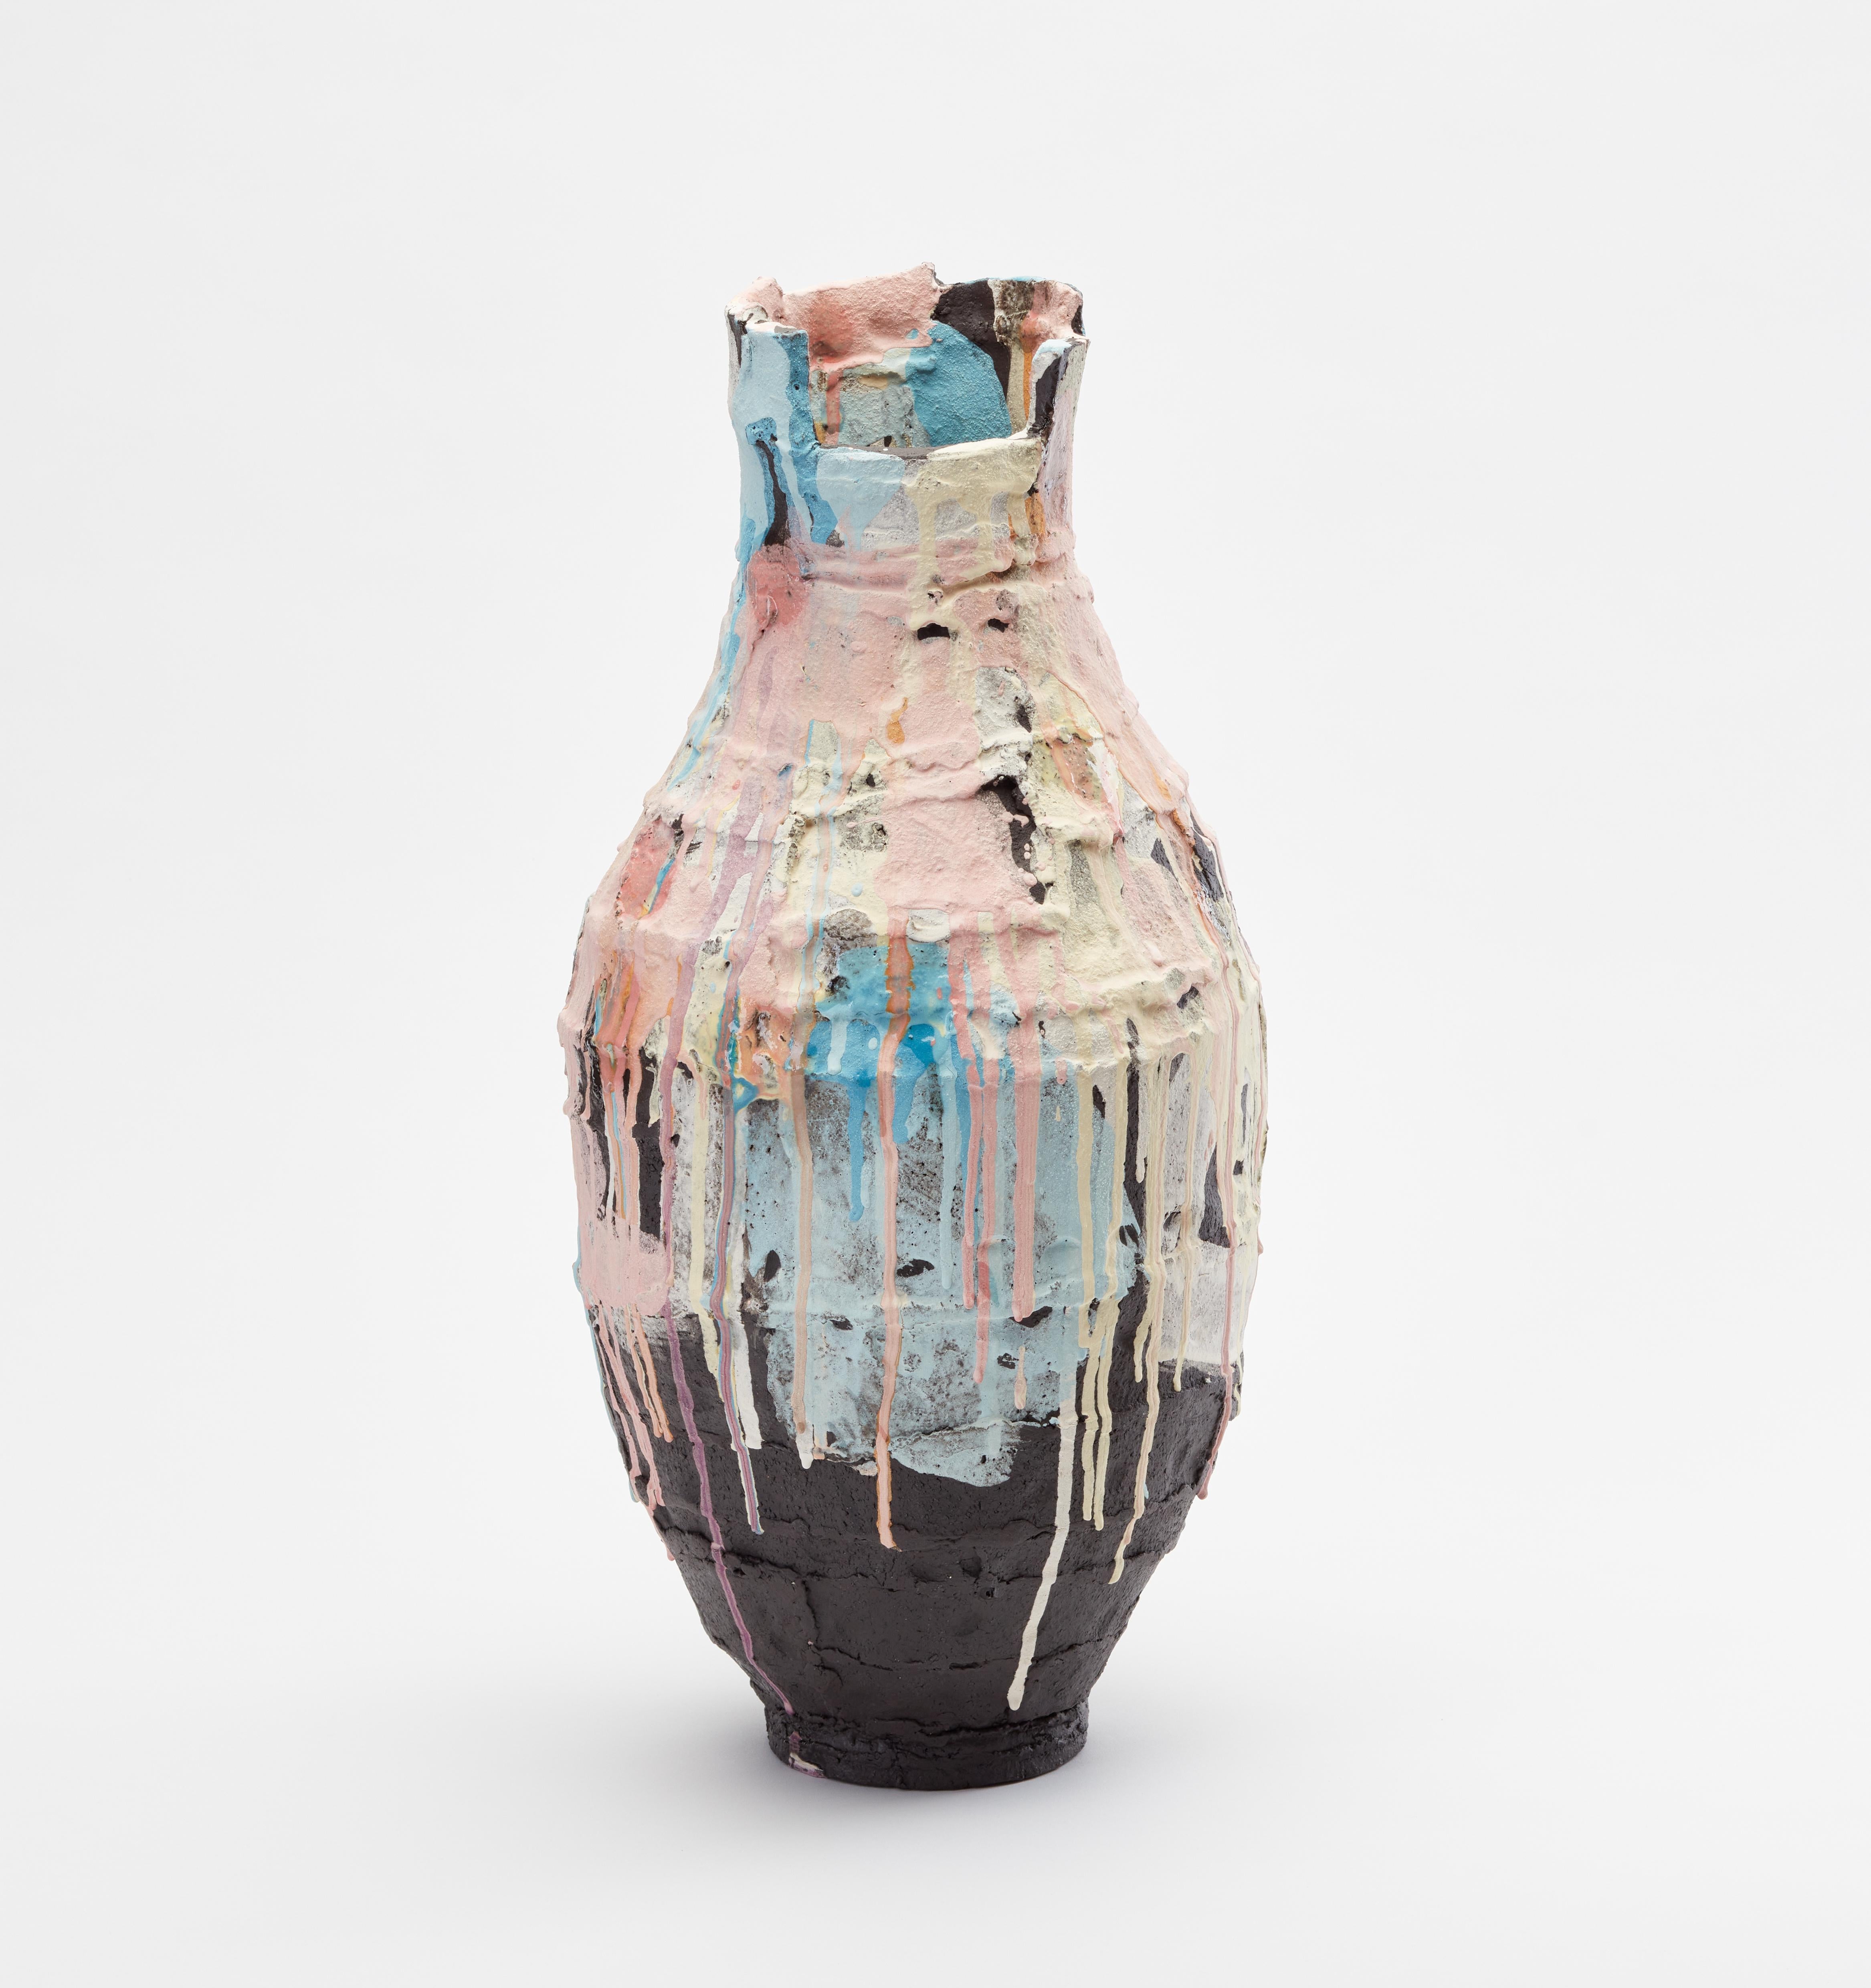 Curruca-Vase von Elke Sada.
Einzigartiges Stück.
Abmessungen: B 22 x T 23 x H 55 cm.
MATERIALIEN: schwarzer Rillenton, farbige Schlicker, transparente Glasur.

Das Faszinierende und Auffallende an der Keramikkunst von Elke Sada ist nicht nur